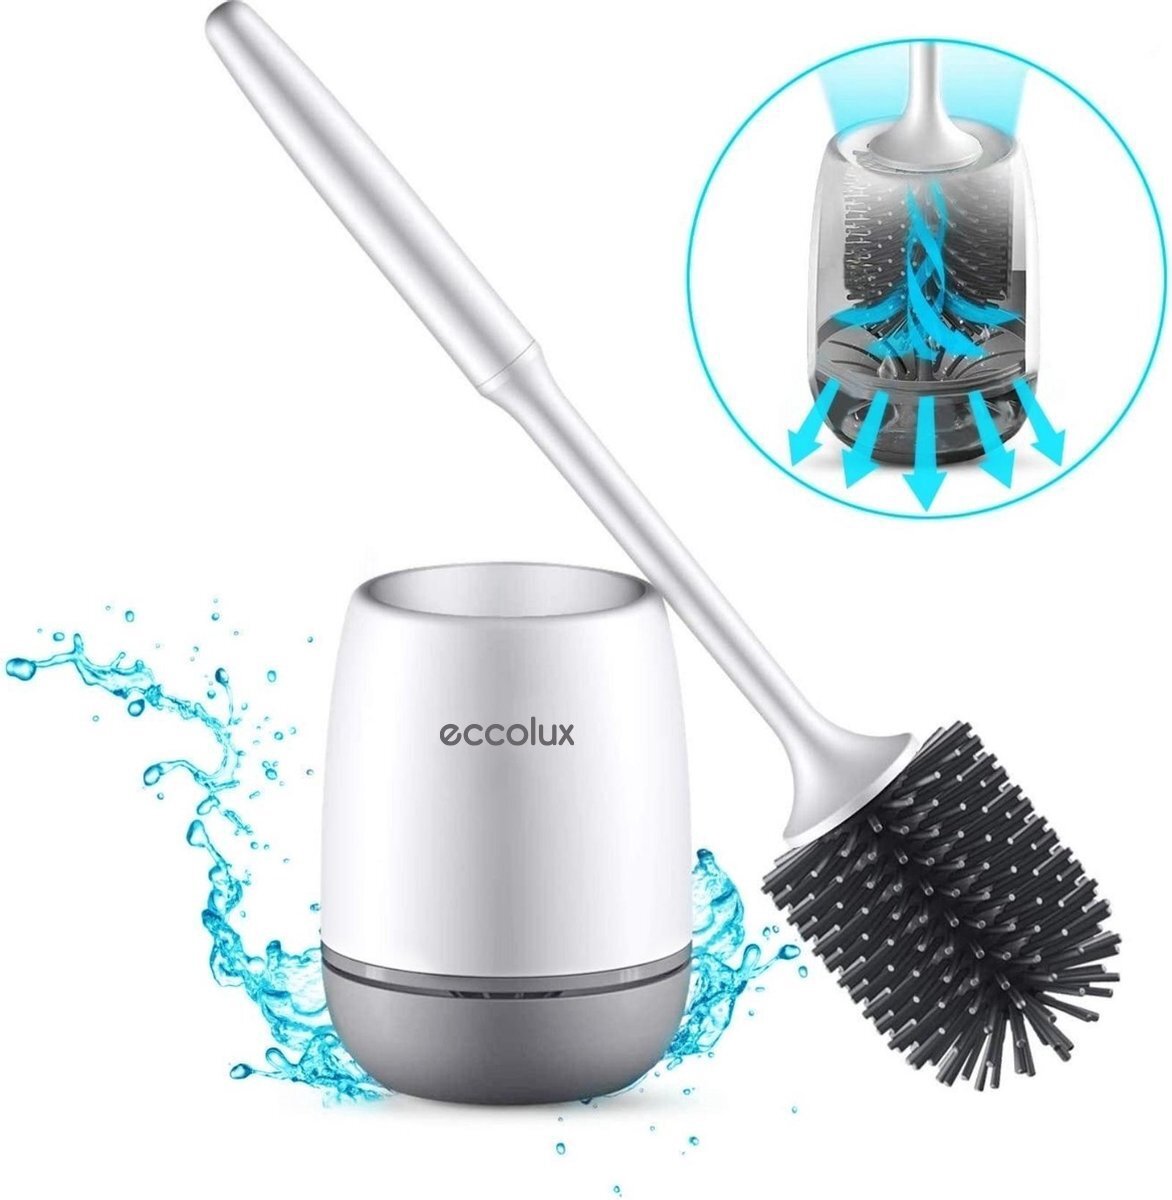 Ecolux Eccolux Luxe Wc borstel met houder - Toiletborstel met hangsysteem - Antibacterieel - Hygiënisch - Duurzaam